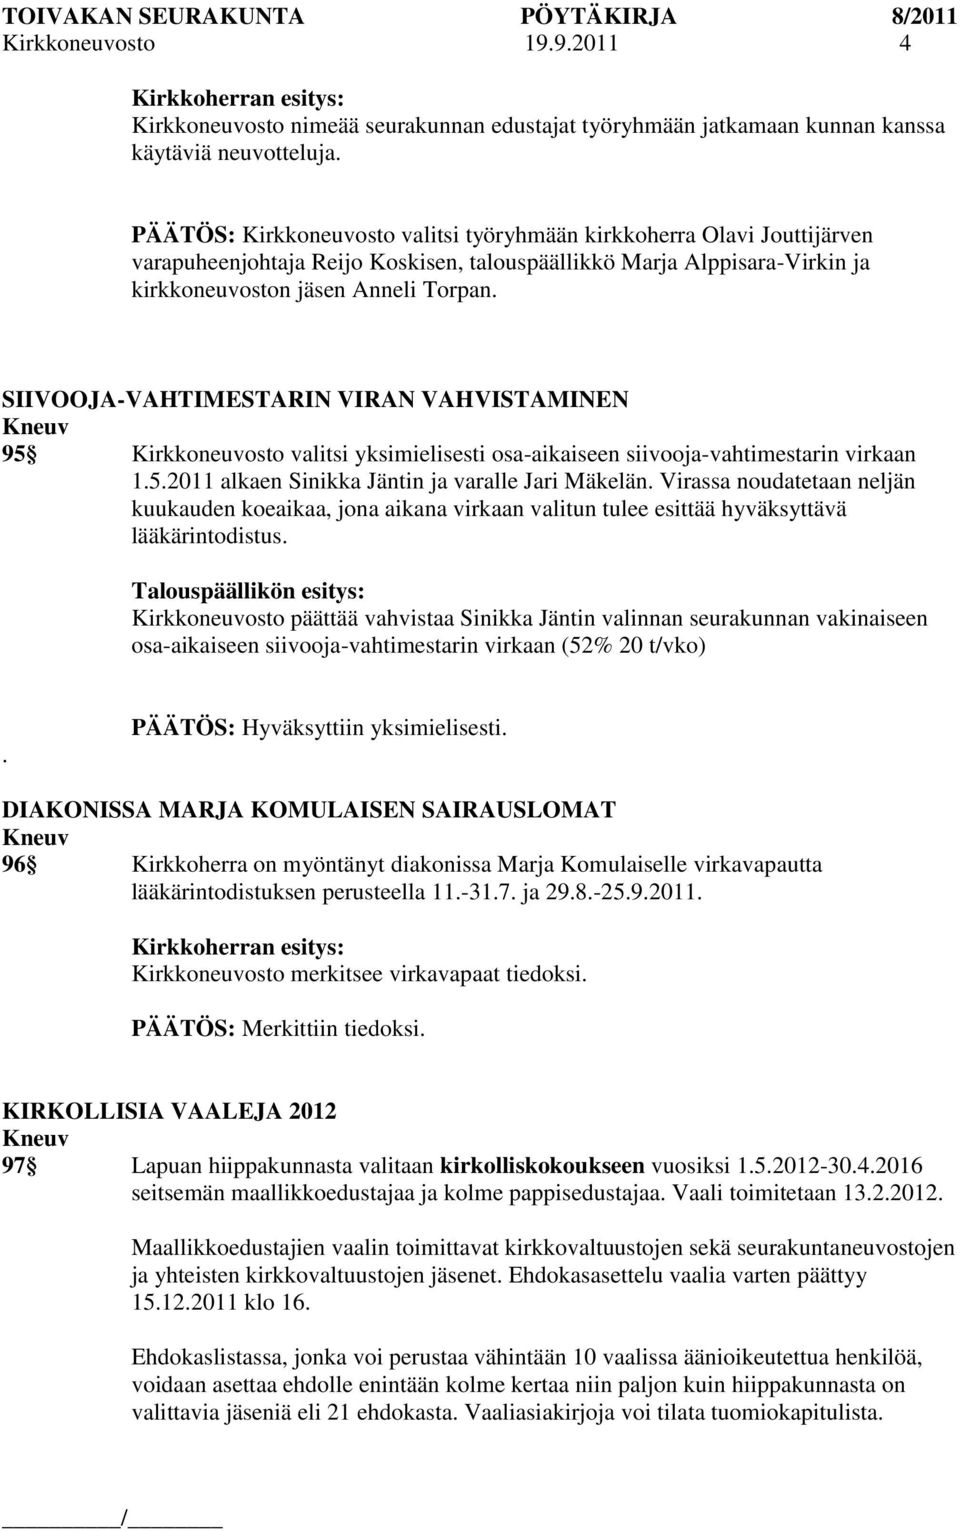 SIIVOOJA-VAHTIMESTARIN VIRAN VAHVISTAMINEN 95 Kirkkoneuvosto valitsi yksimielisesti osa-aikaiseen siivooja-vahtimestarin virkaan 1.5.2011 alkaen Sinikka Jäntin ja varalle Jari Mäkelän.